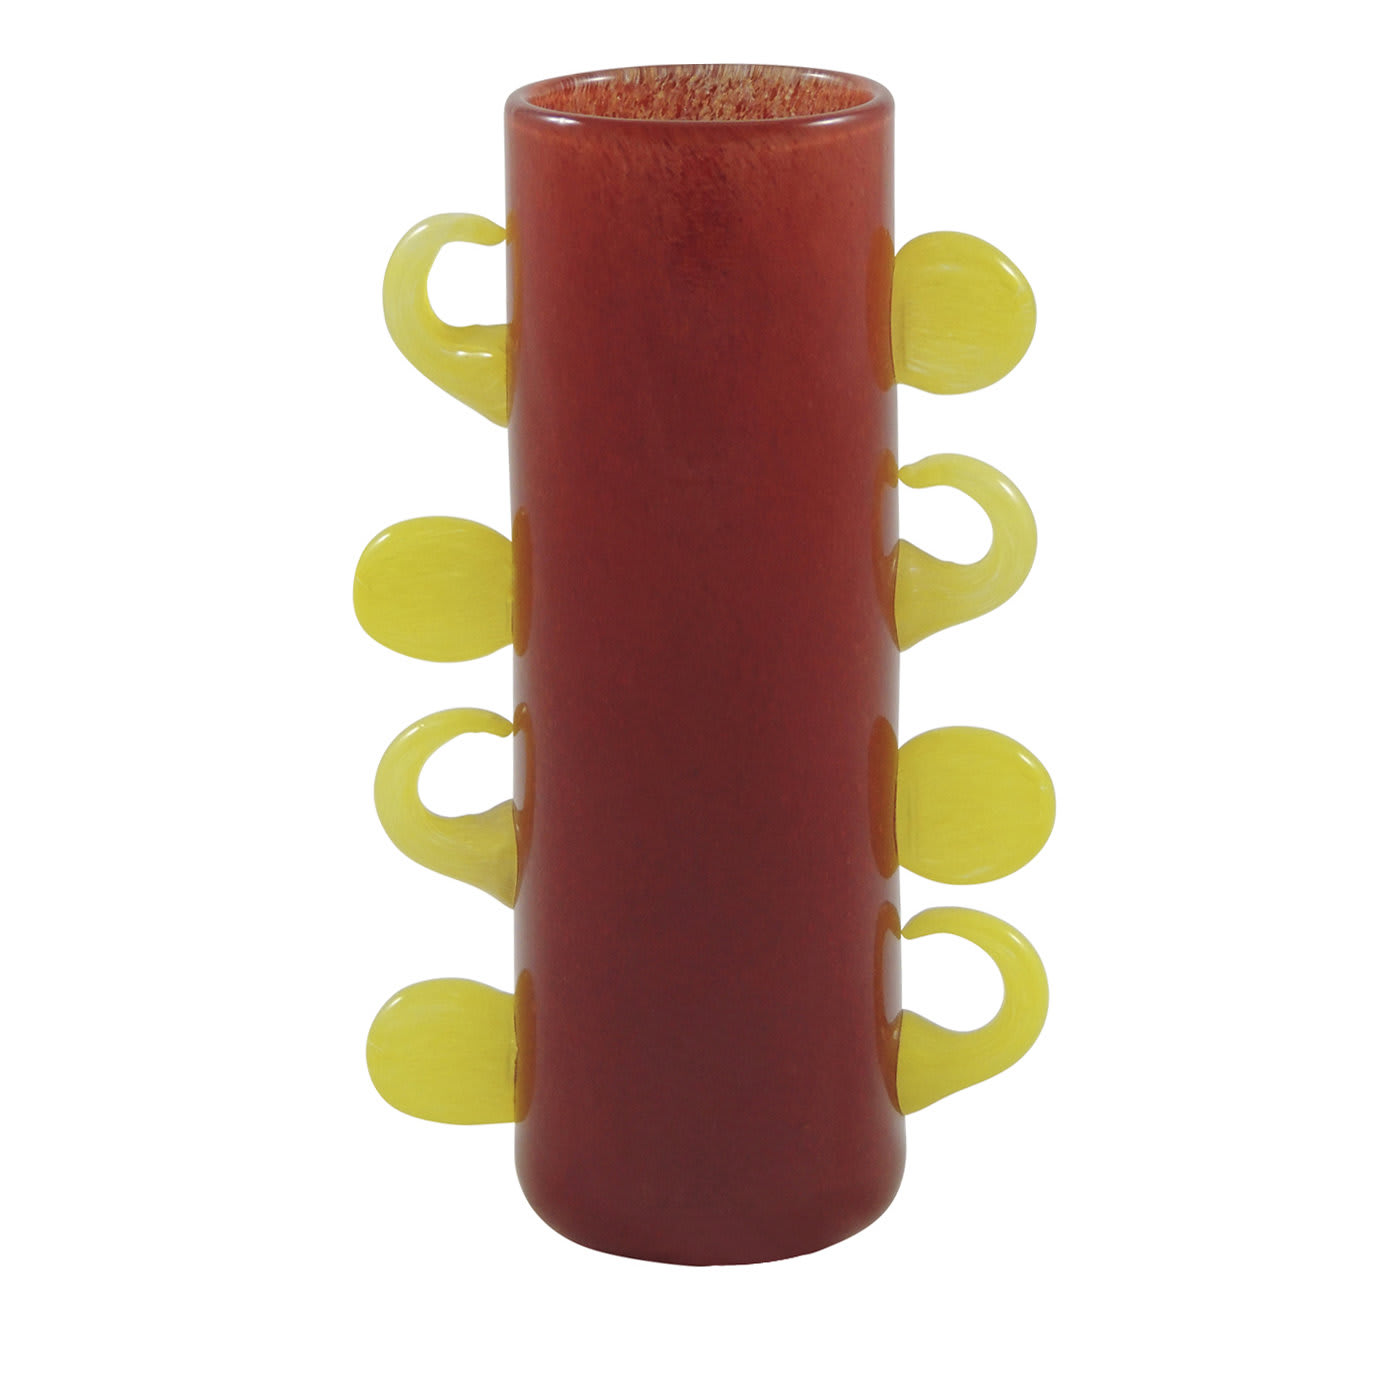 Coriandoli Red-Yellow Vase - Gambaro e Tagliapietra